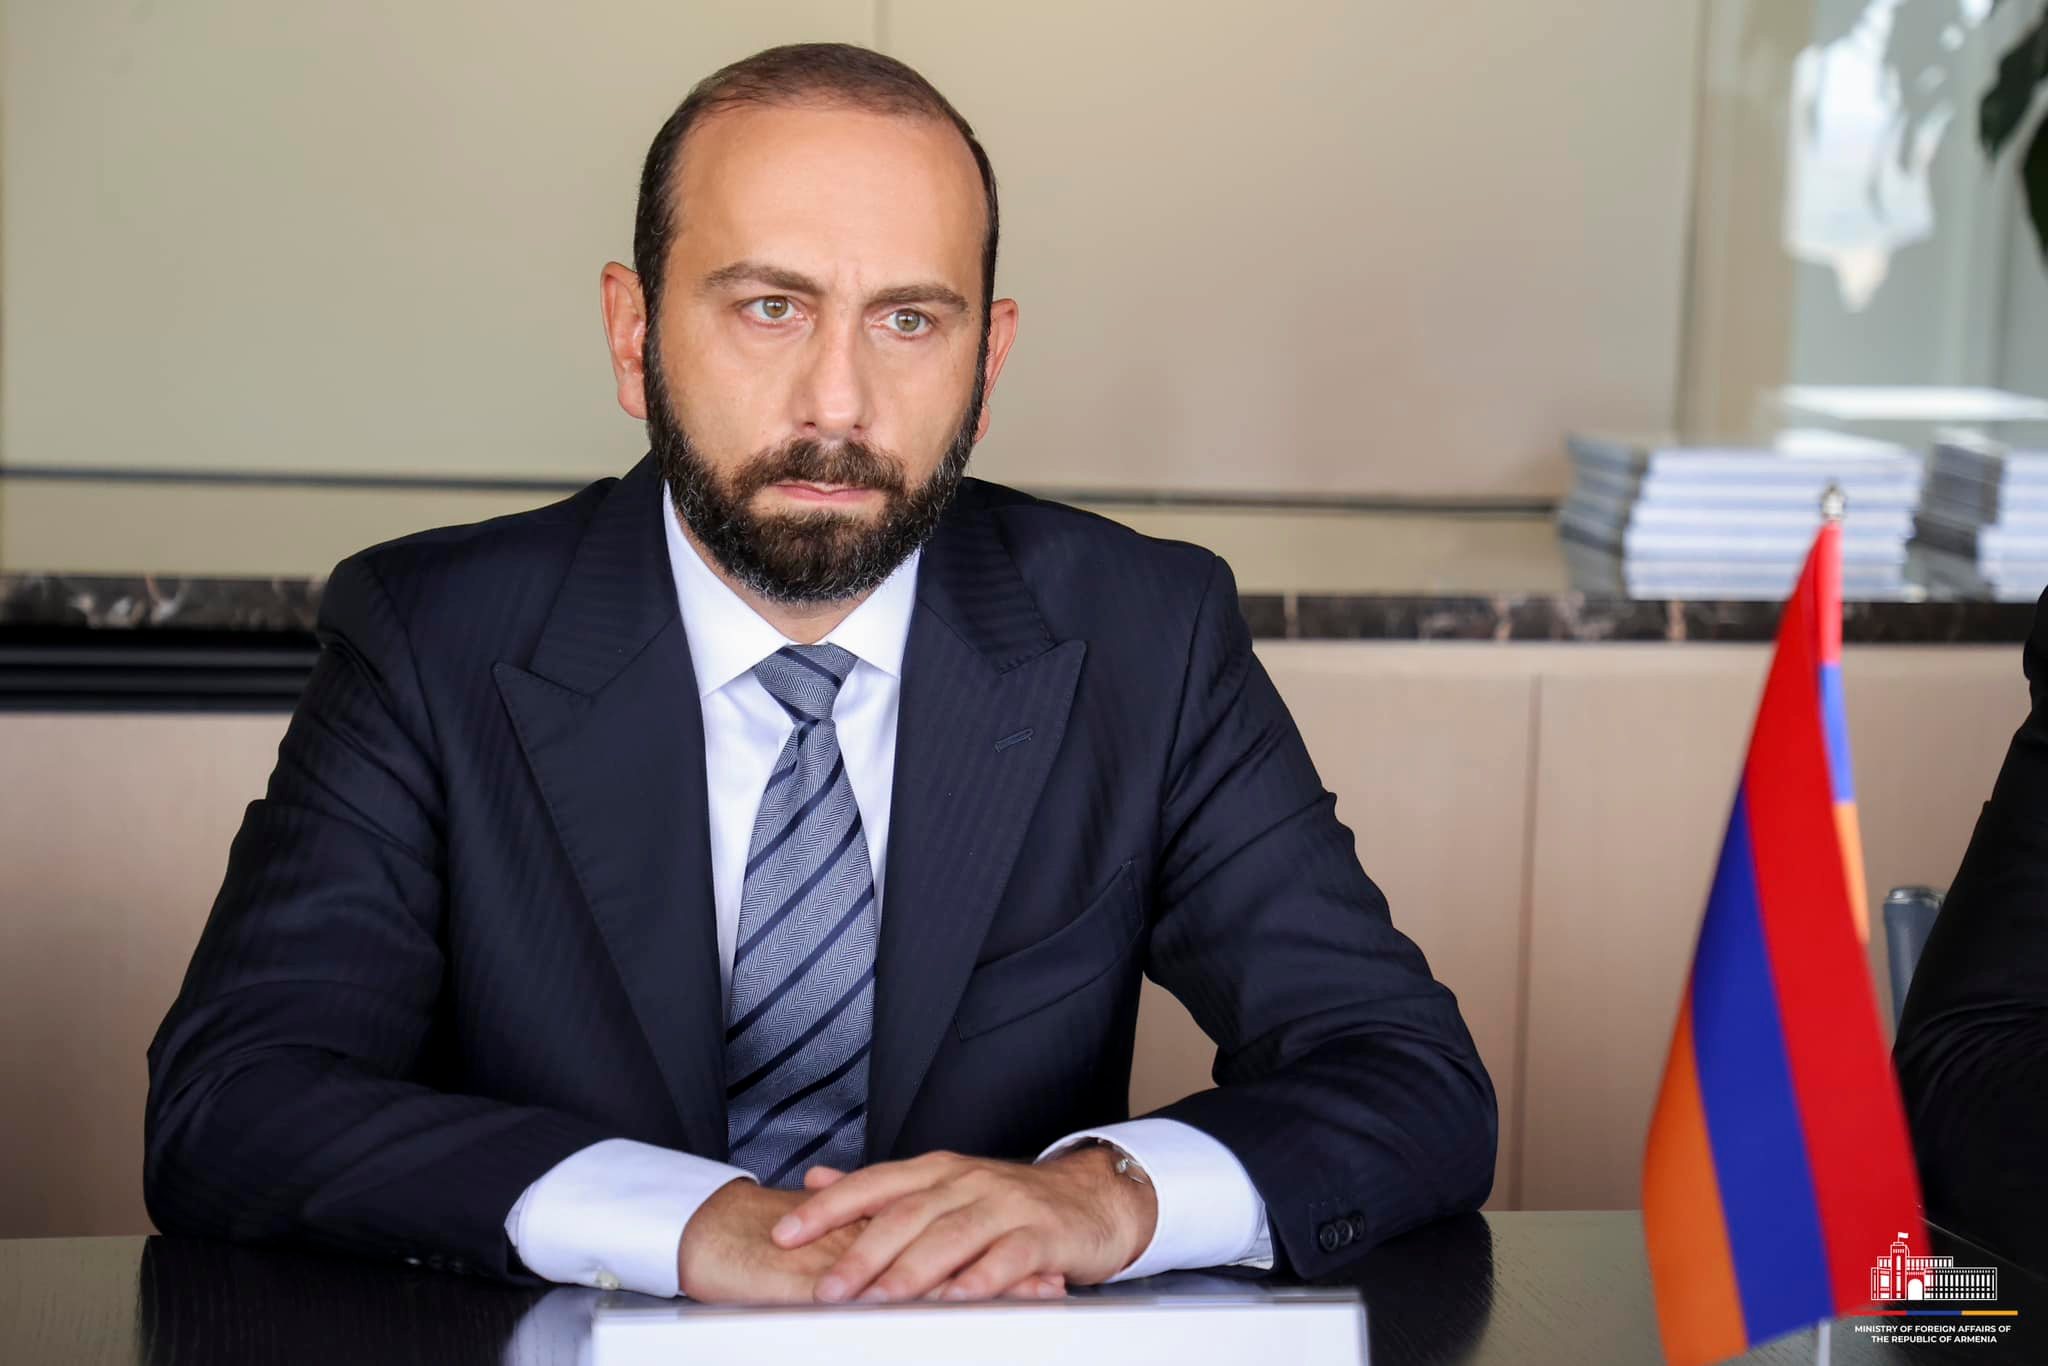 Ermenistan Dışişleri Bakanı, Antalya Diplomasi Forumu'na katılacak